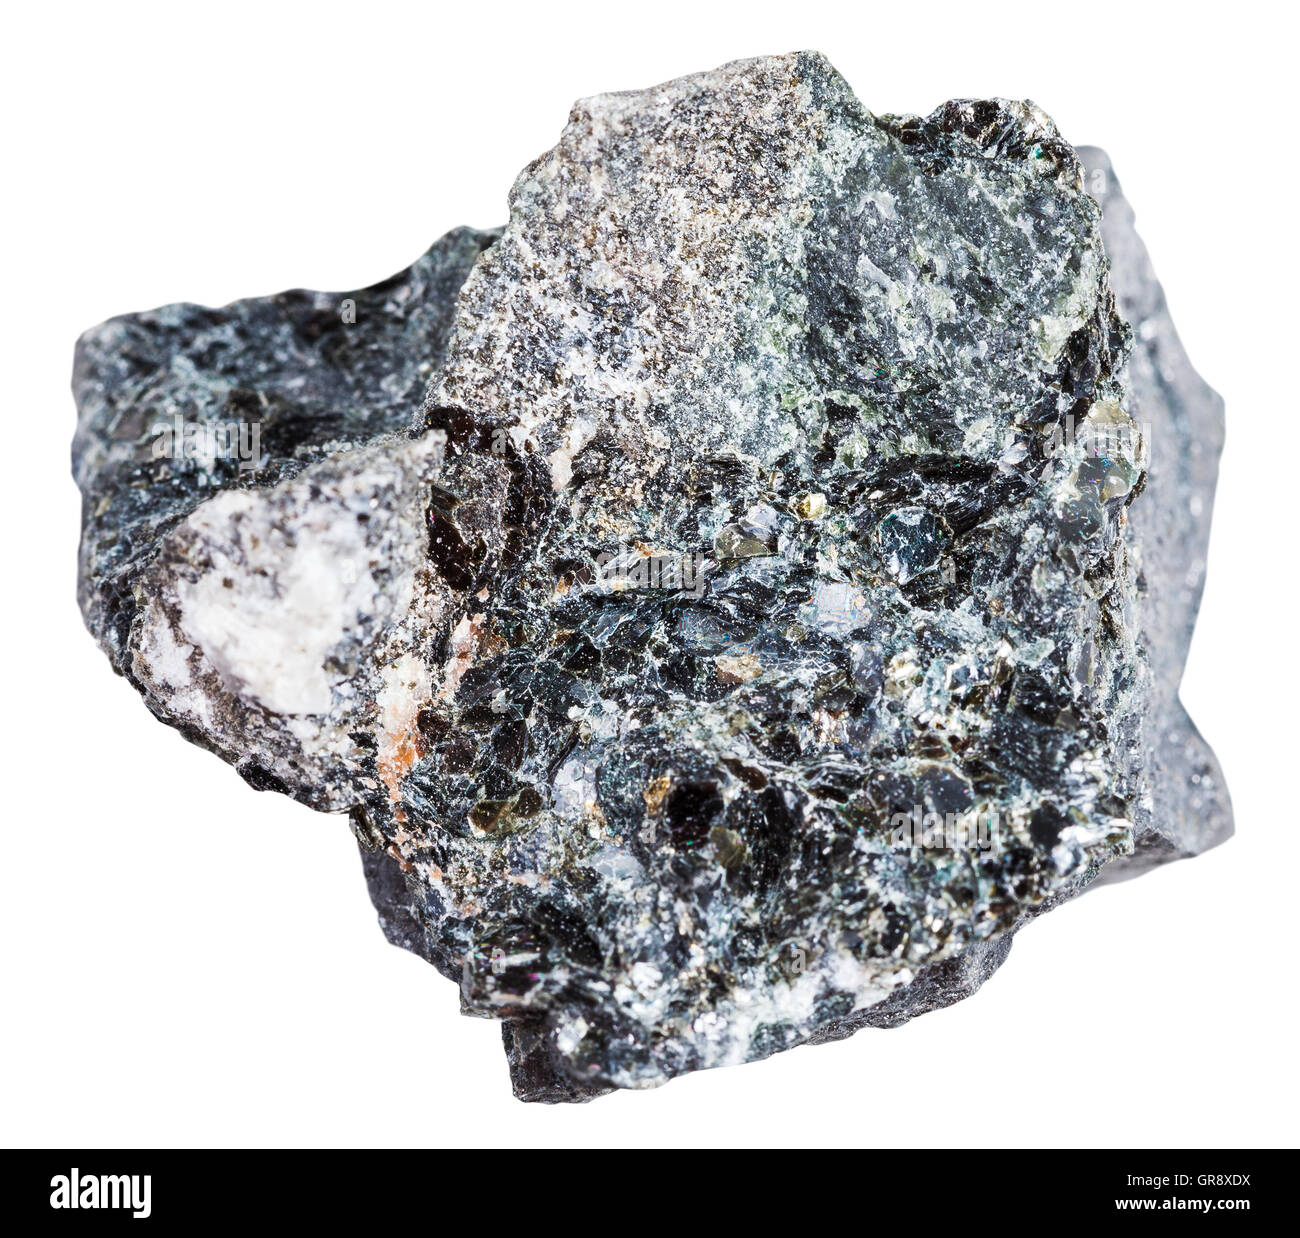 Makroaufnahmen von Bodenschätzen - Stein Magnetit Erz isoliert auf weißem Hintergrund Stockfoto